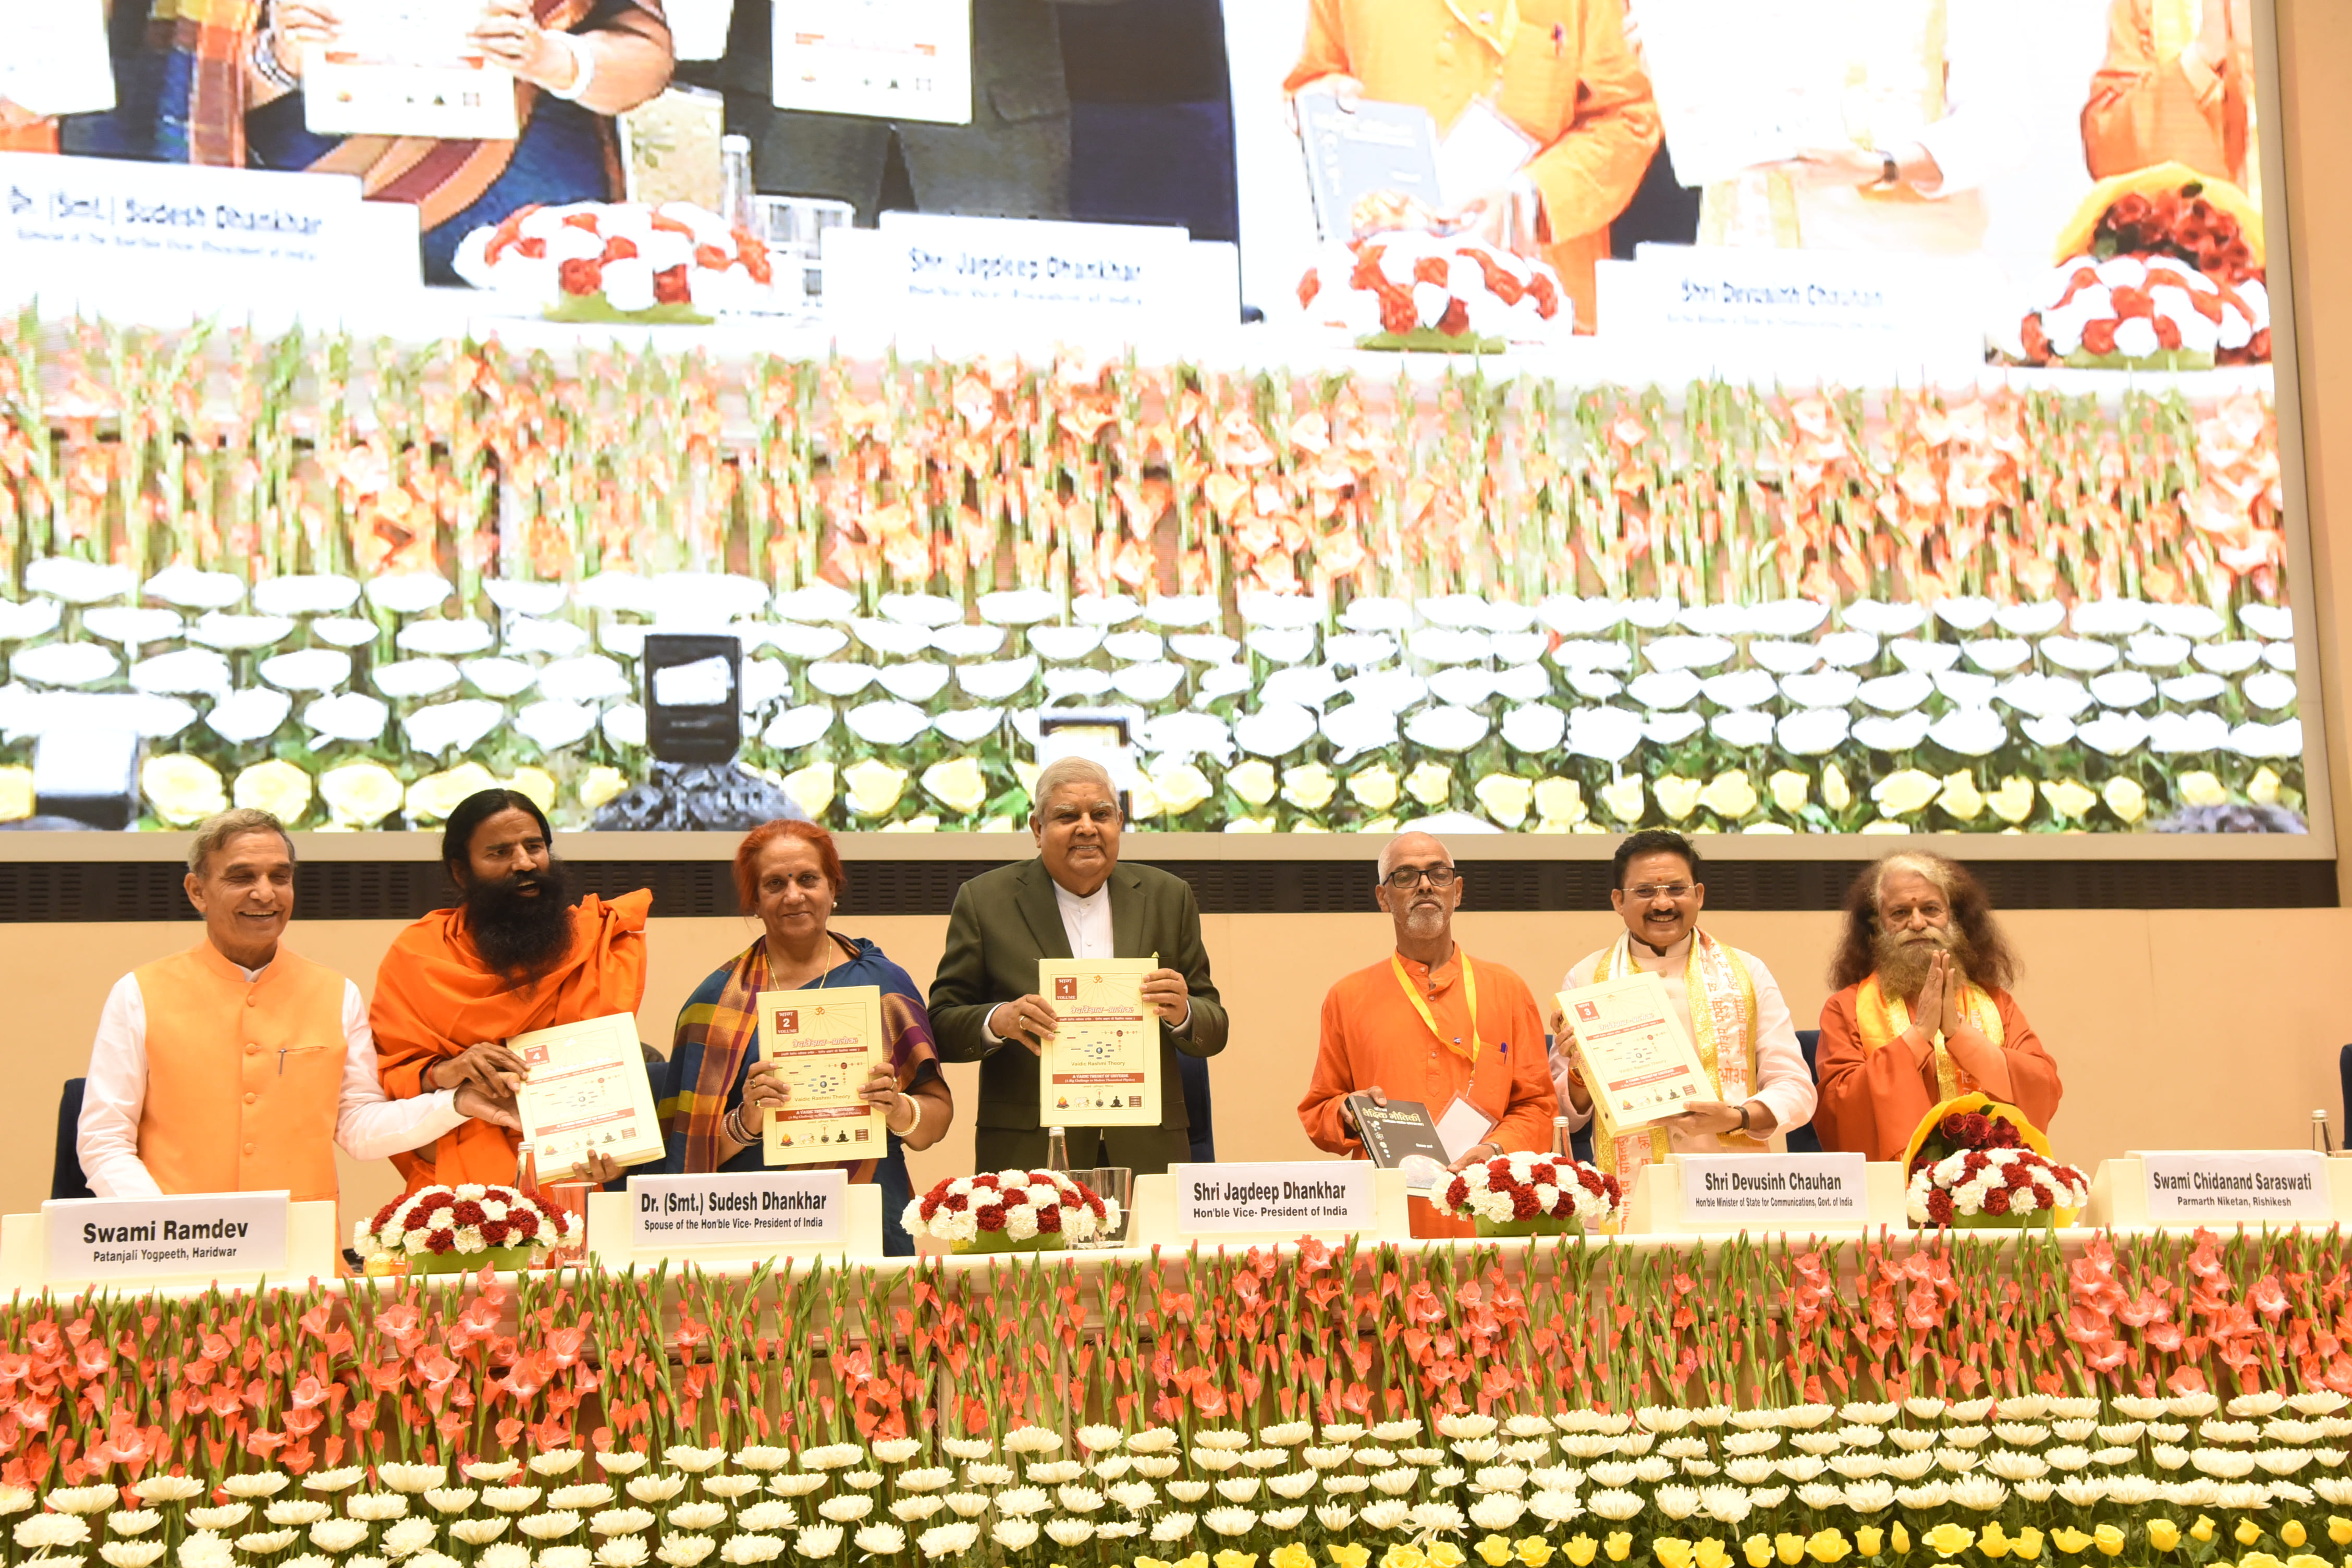 07 अप्रैल 2023 को नई दिल्ली में स्वामी दयानंद सरस्वती की 200वीं जयंती के उपलक्ष्य में स्मृति डाक टिकट के विमोचन के दौरान उपराष्ट्रपति श्री जगदीप धनखड़ एवं उनकी धर्मपत्नी डा. सुदेश धनखड़।